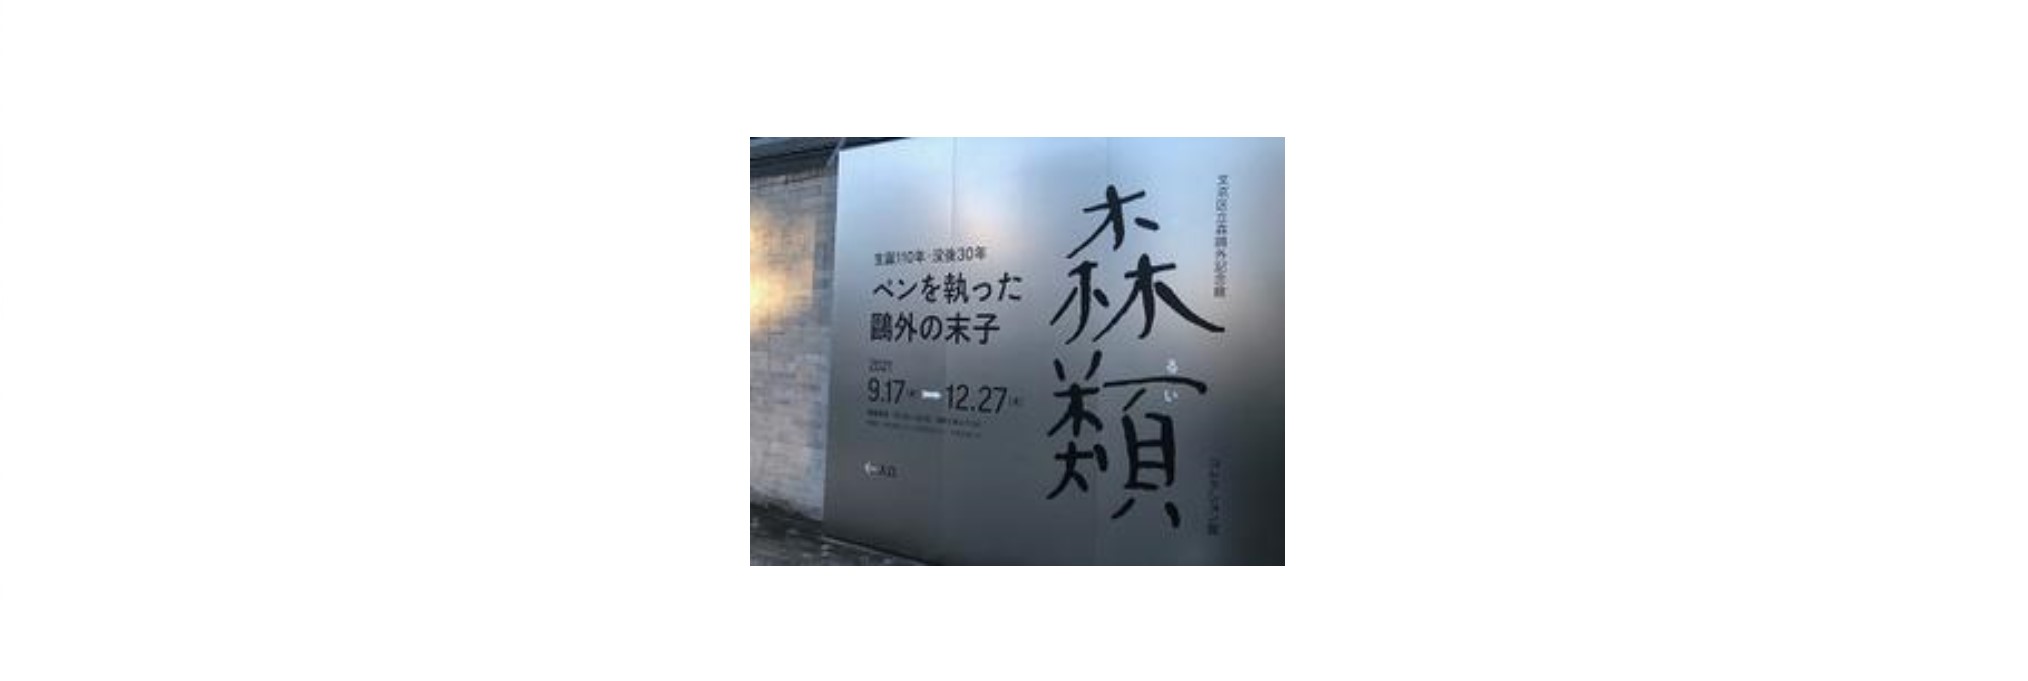 【美術館訪問レポート】<br>文京区立森鷗外記念館のコレクション展に行ってきました